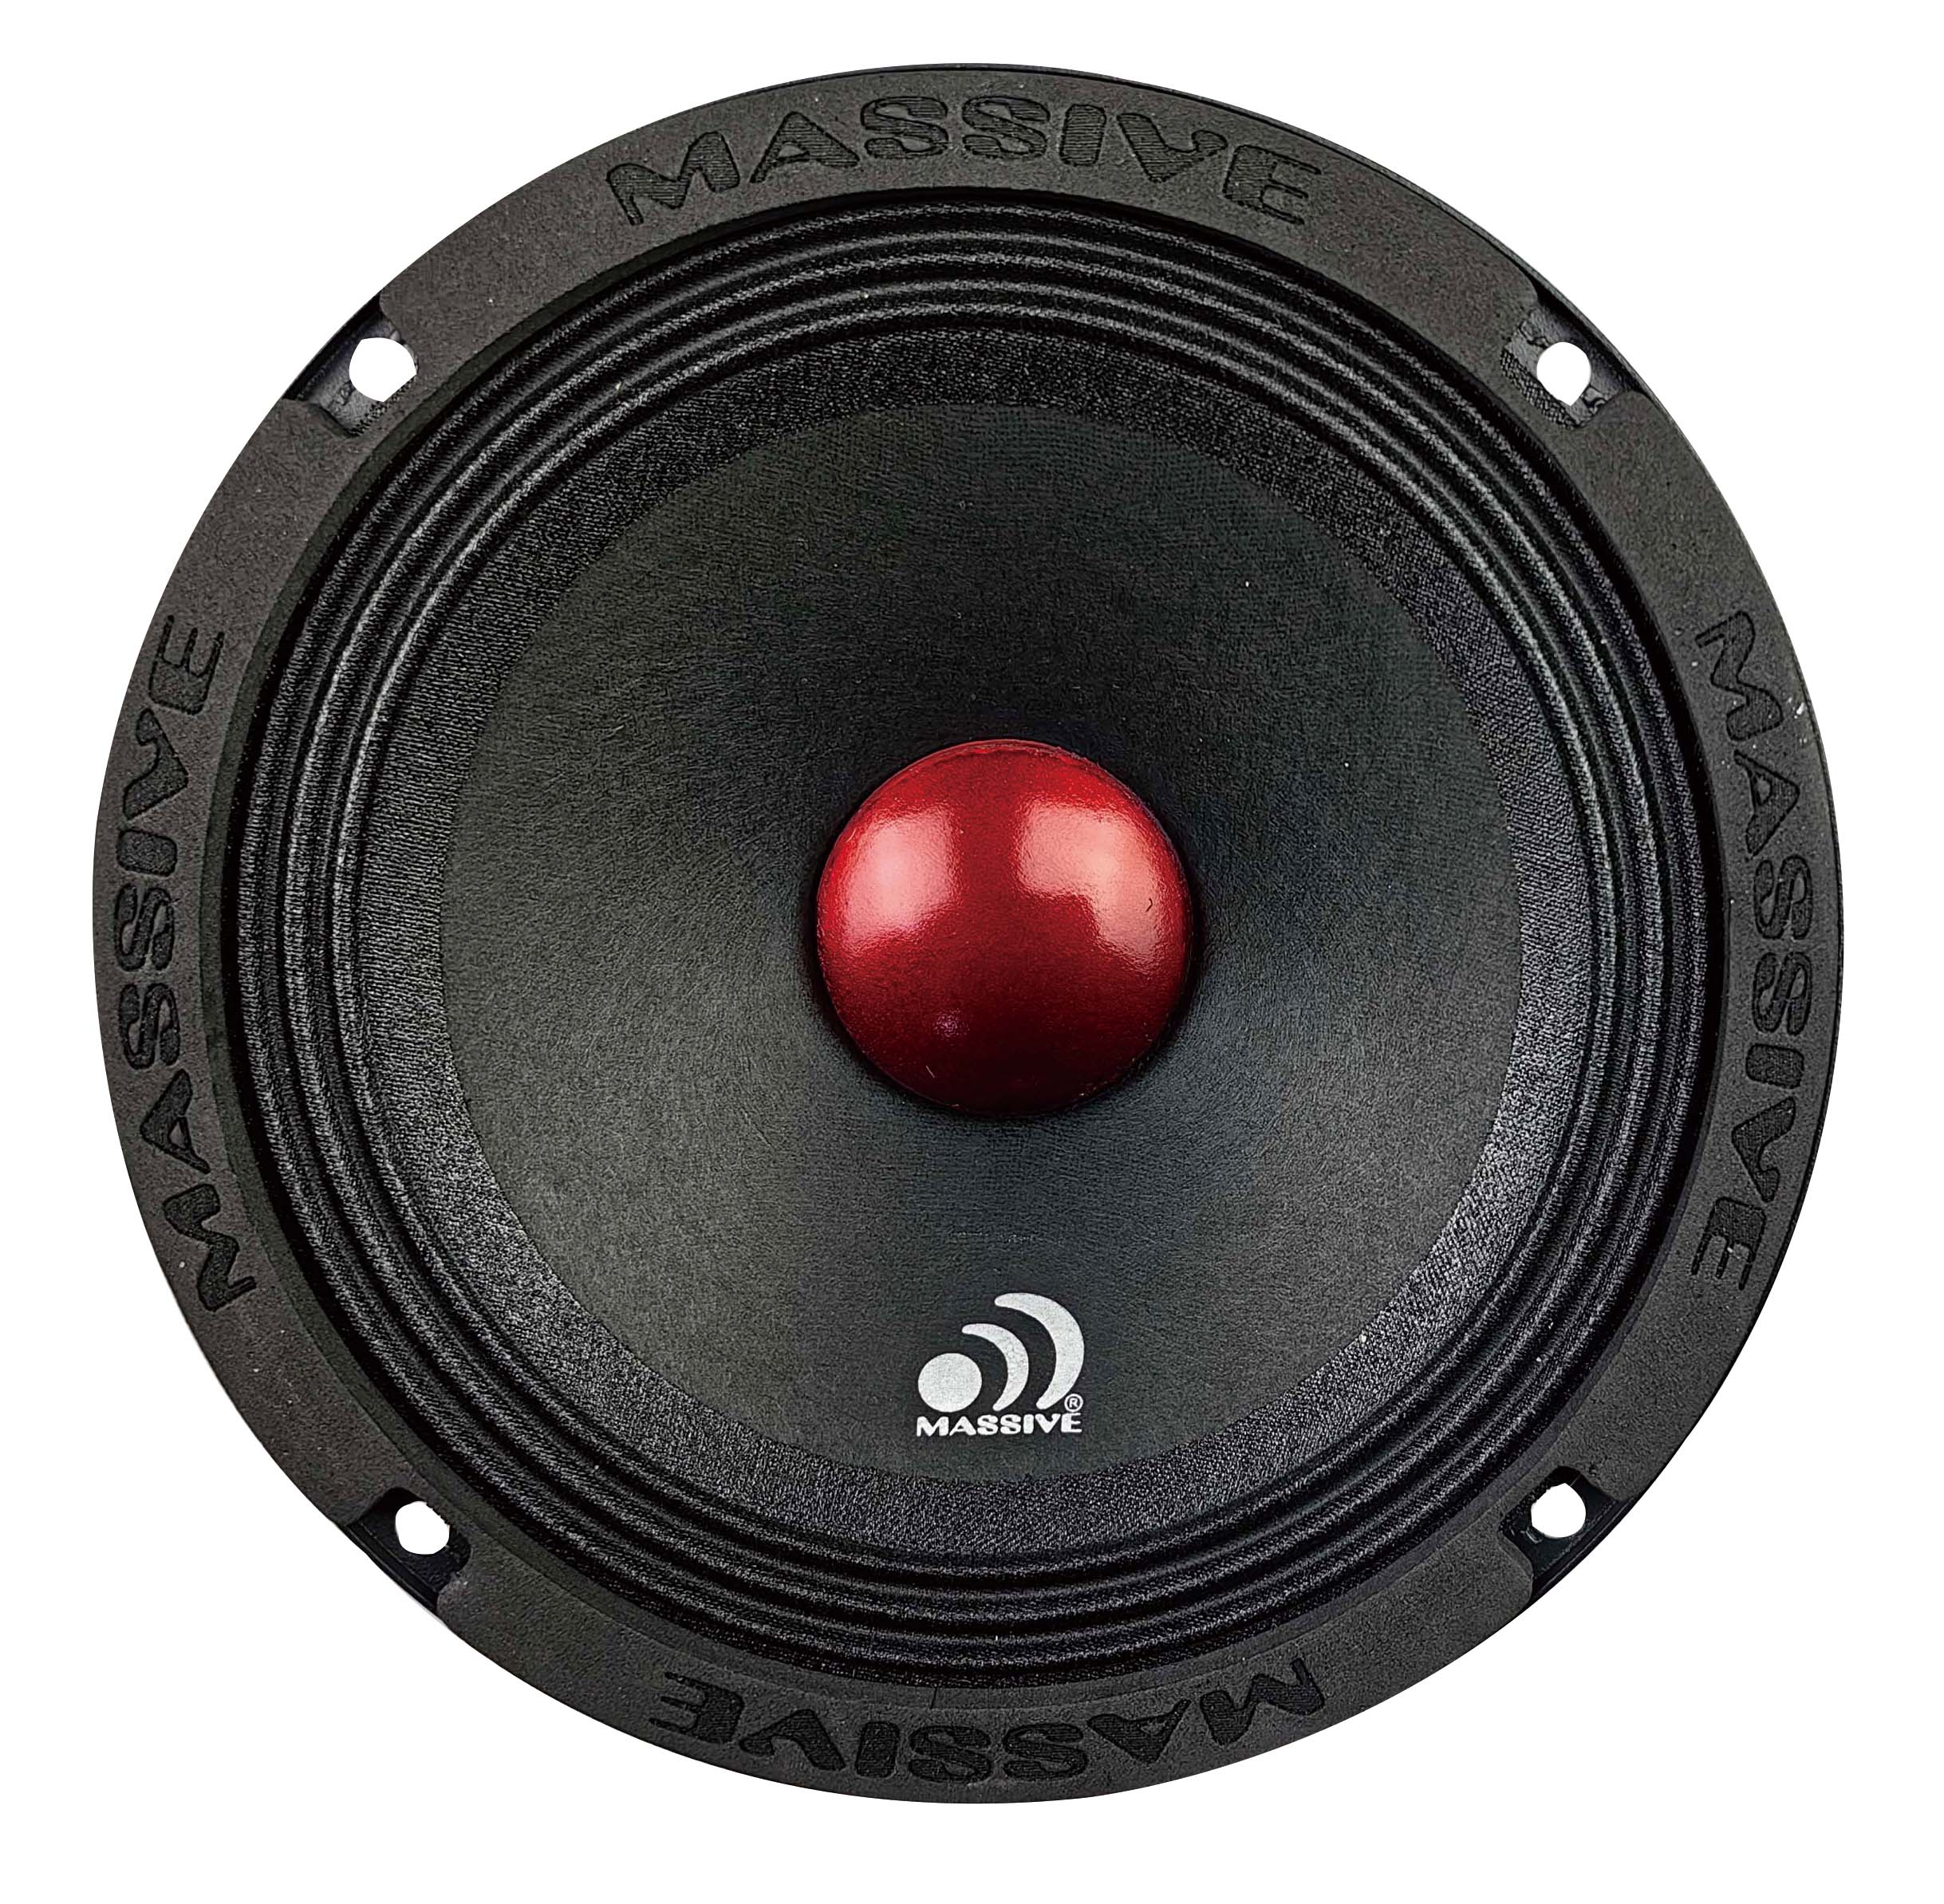 MM6A - 6.5" Mid-Range Speaker